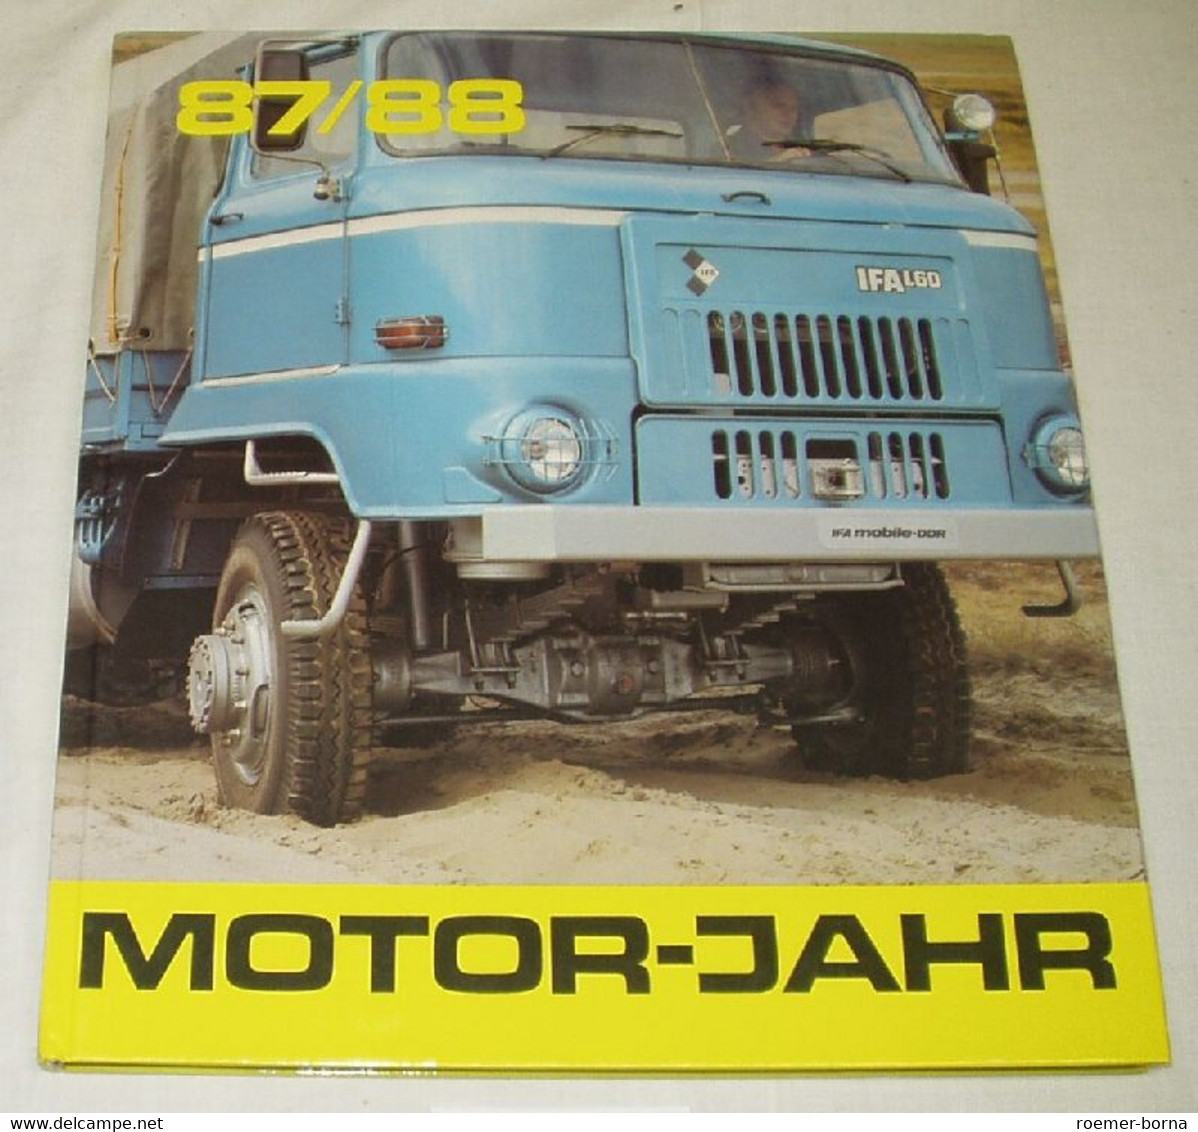 Motor-Jahr 87/88 - Eine Internationale Revue. - Technical